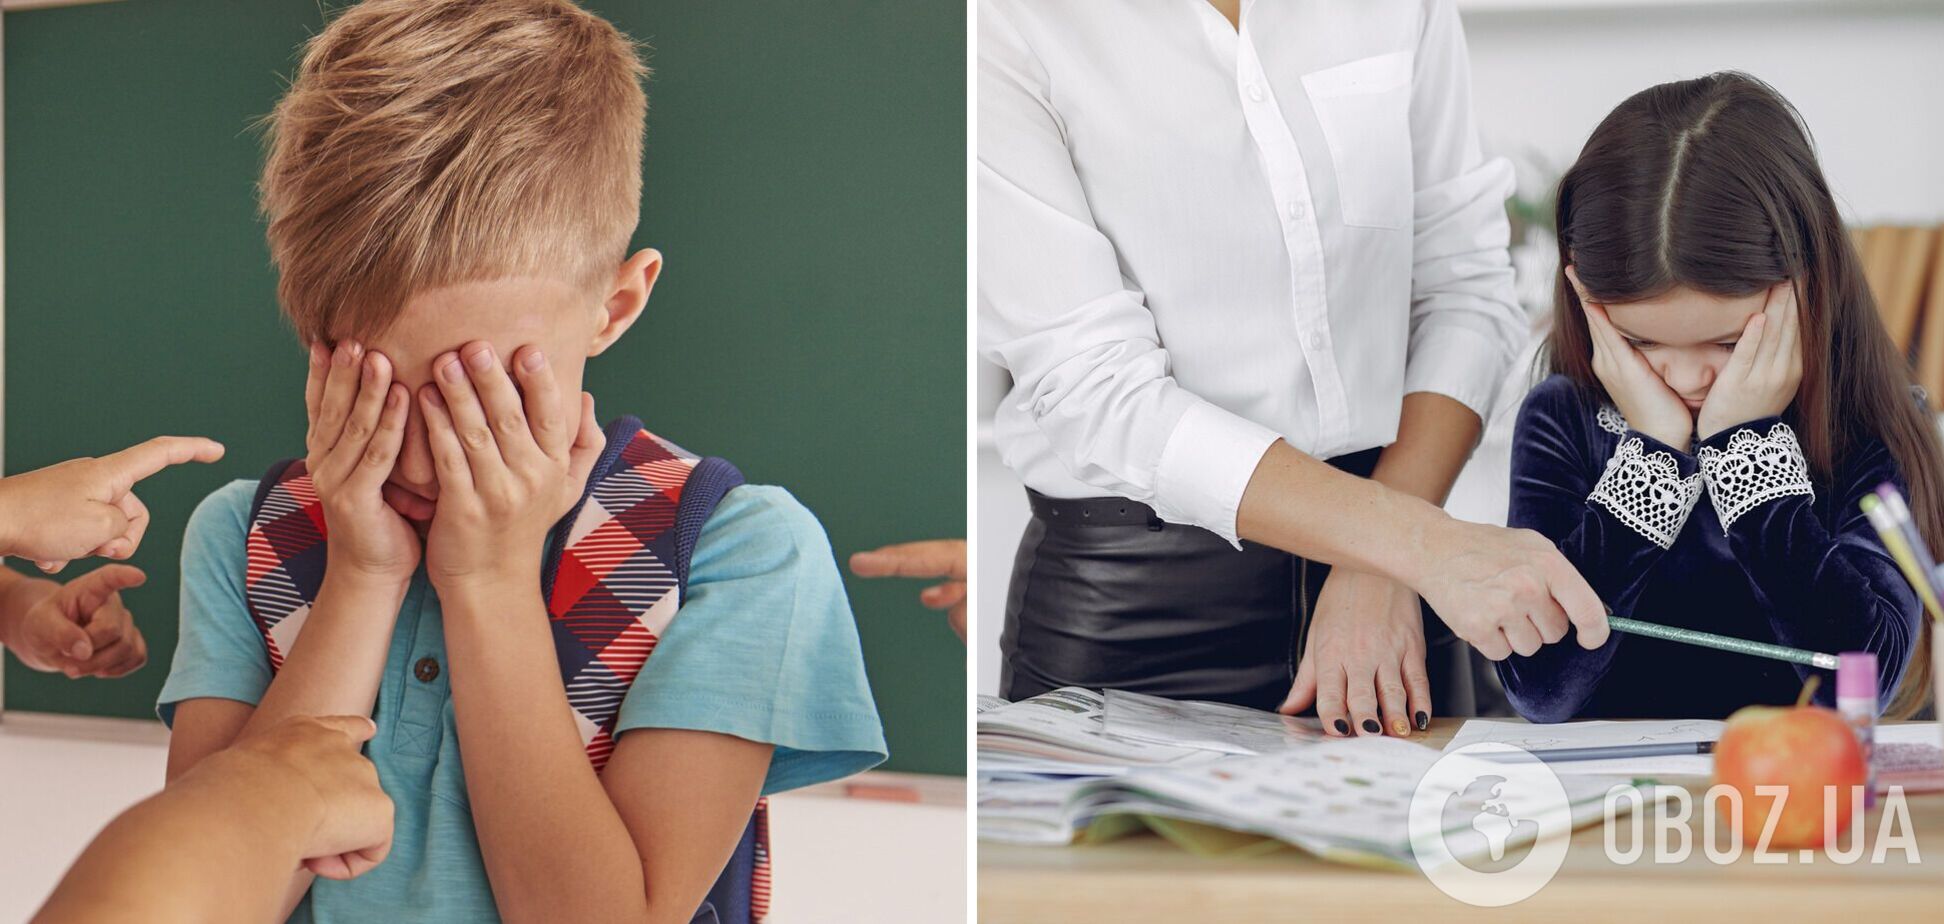 В Україні запропонували знижувати категорію вчителя за булінг і мобінг: що це означає